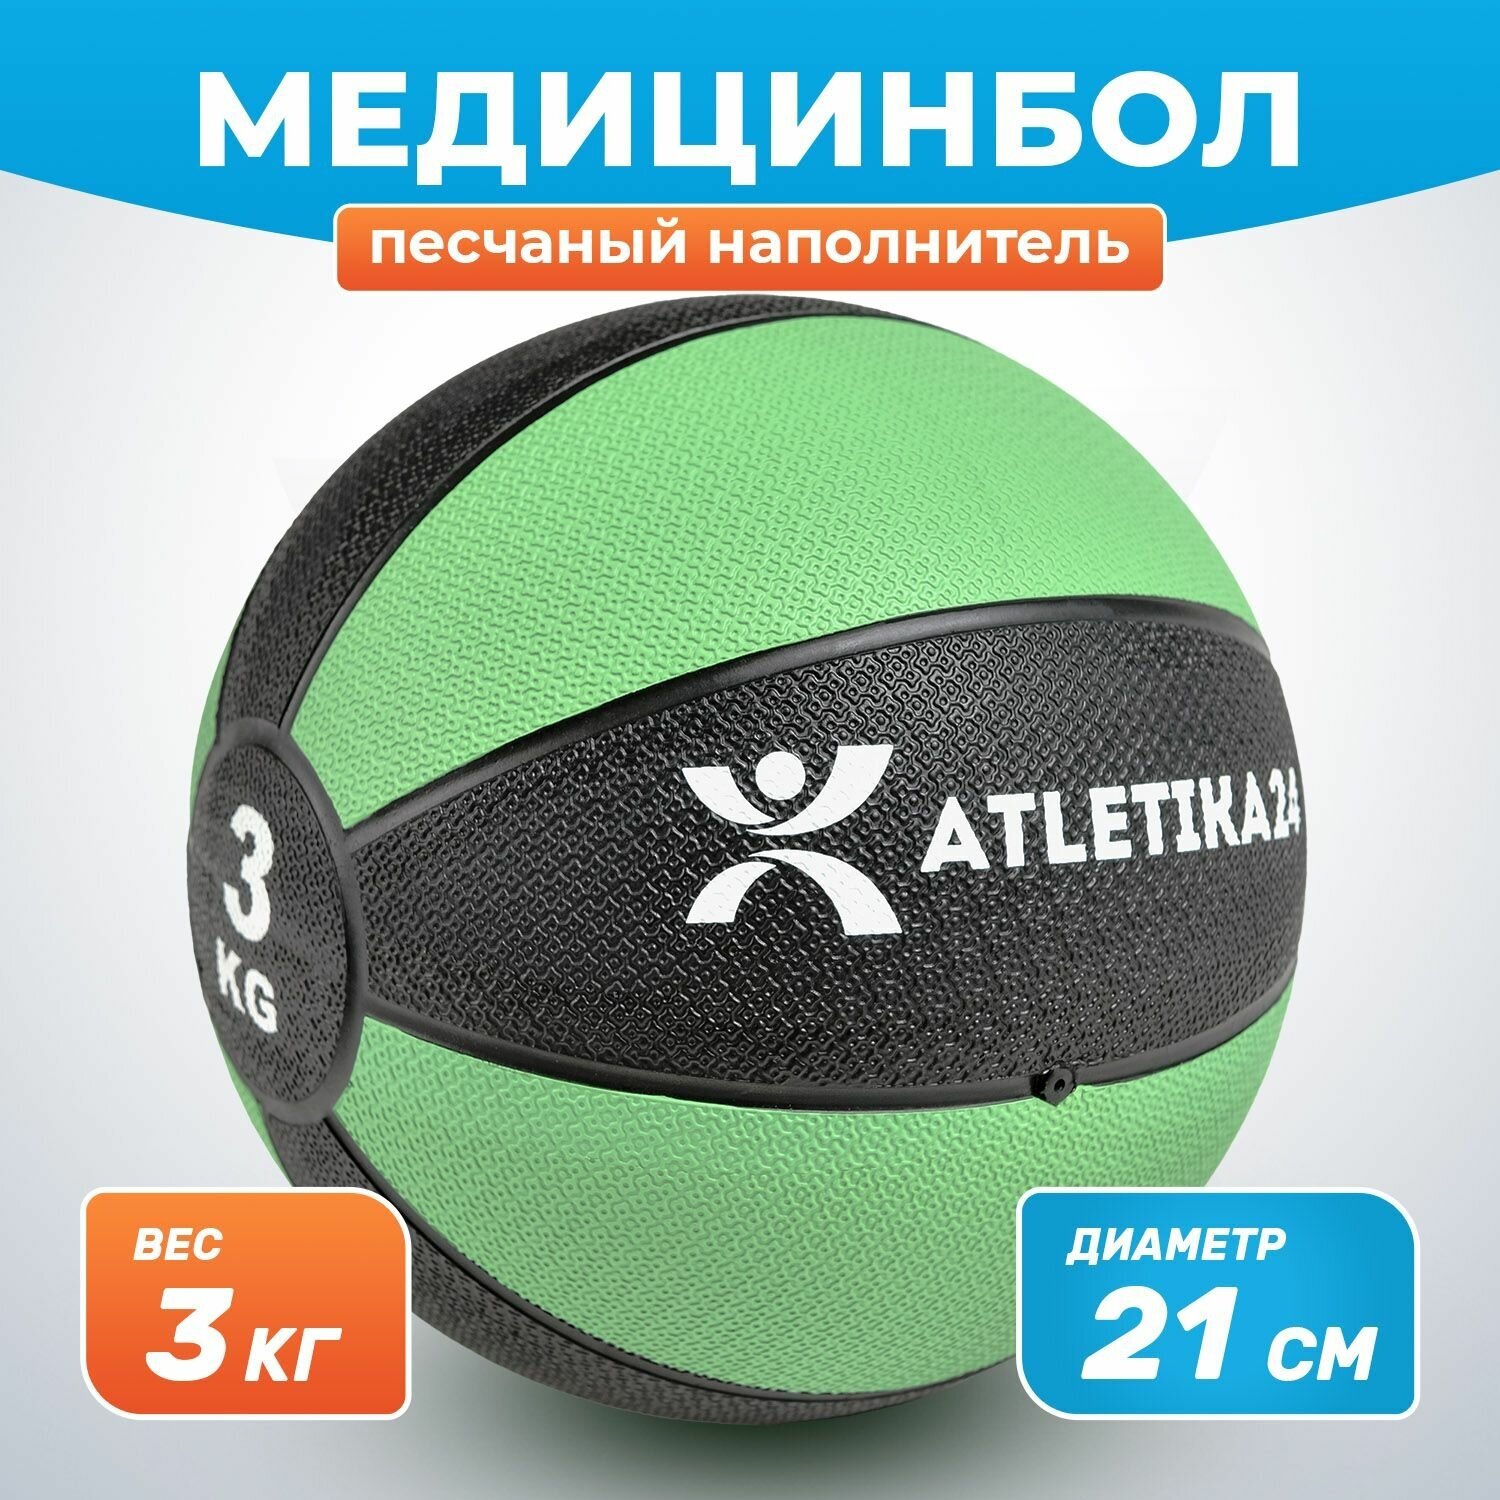 Медбол для фитнеса с песочным наполнителем, зеленый, 3 кг